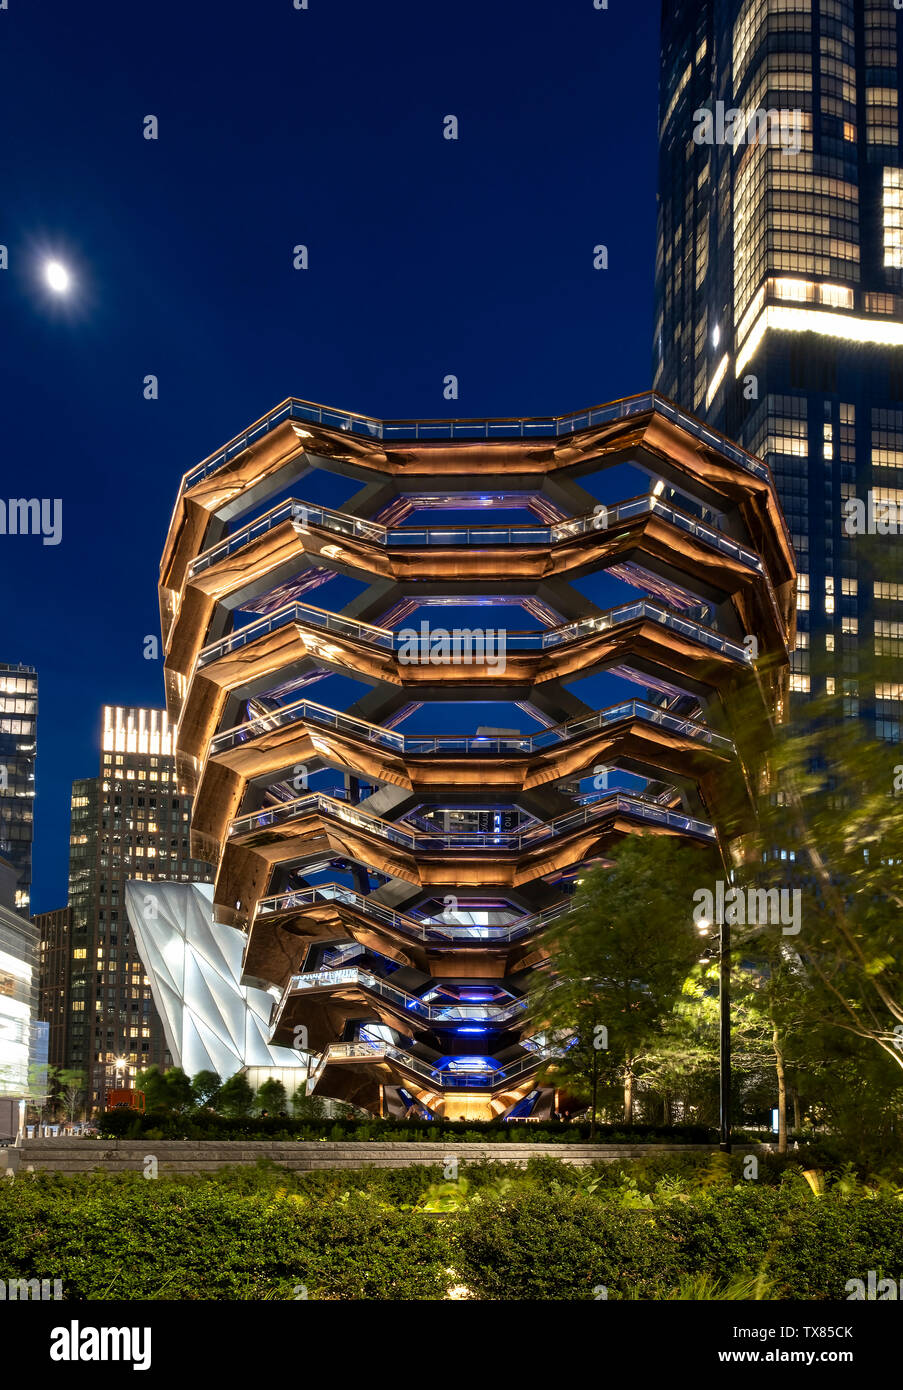 Le Bateau de nuit, Hudson Yards, Manhattan, New York City, New York, USA Conçu par le designer britannique Thomas Heatherwick Banque D'Images